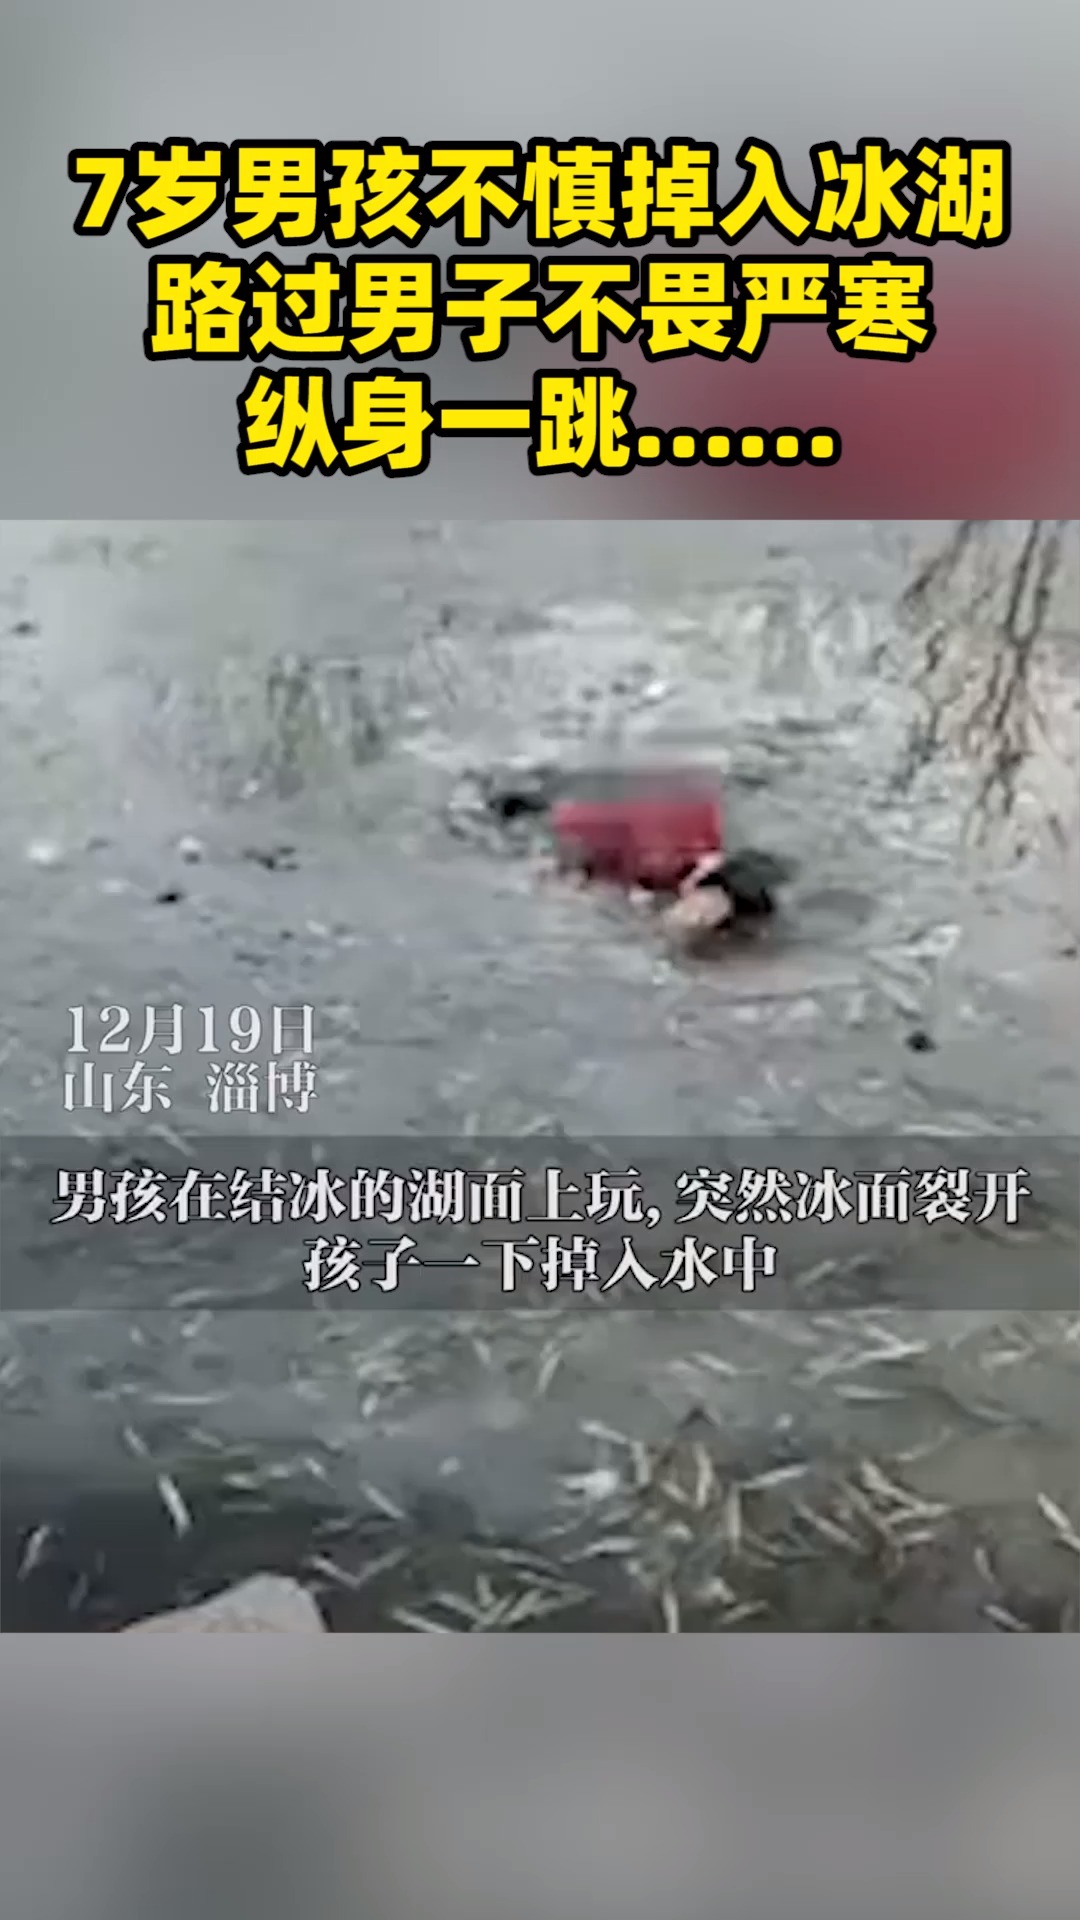 这一跳真帅！7岁男孩冰面玩耍不慎掉入湖中, 路过男子不畏严寒跳水救人……